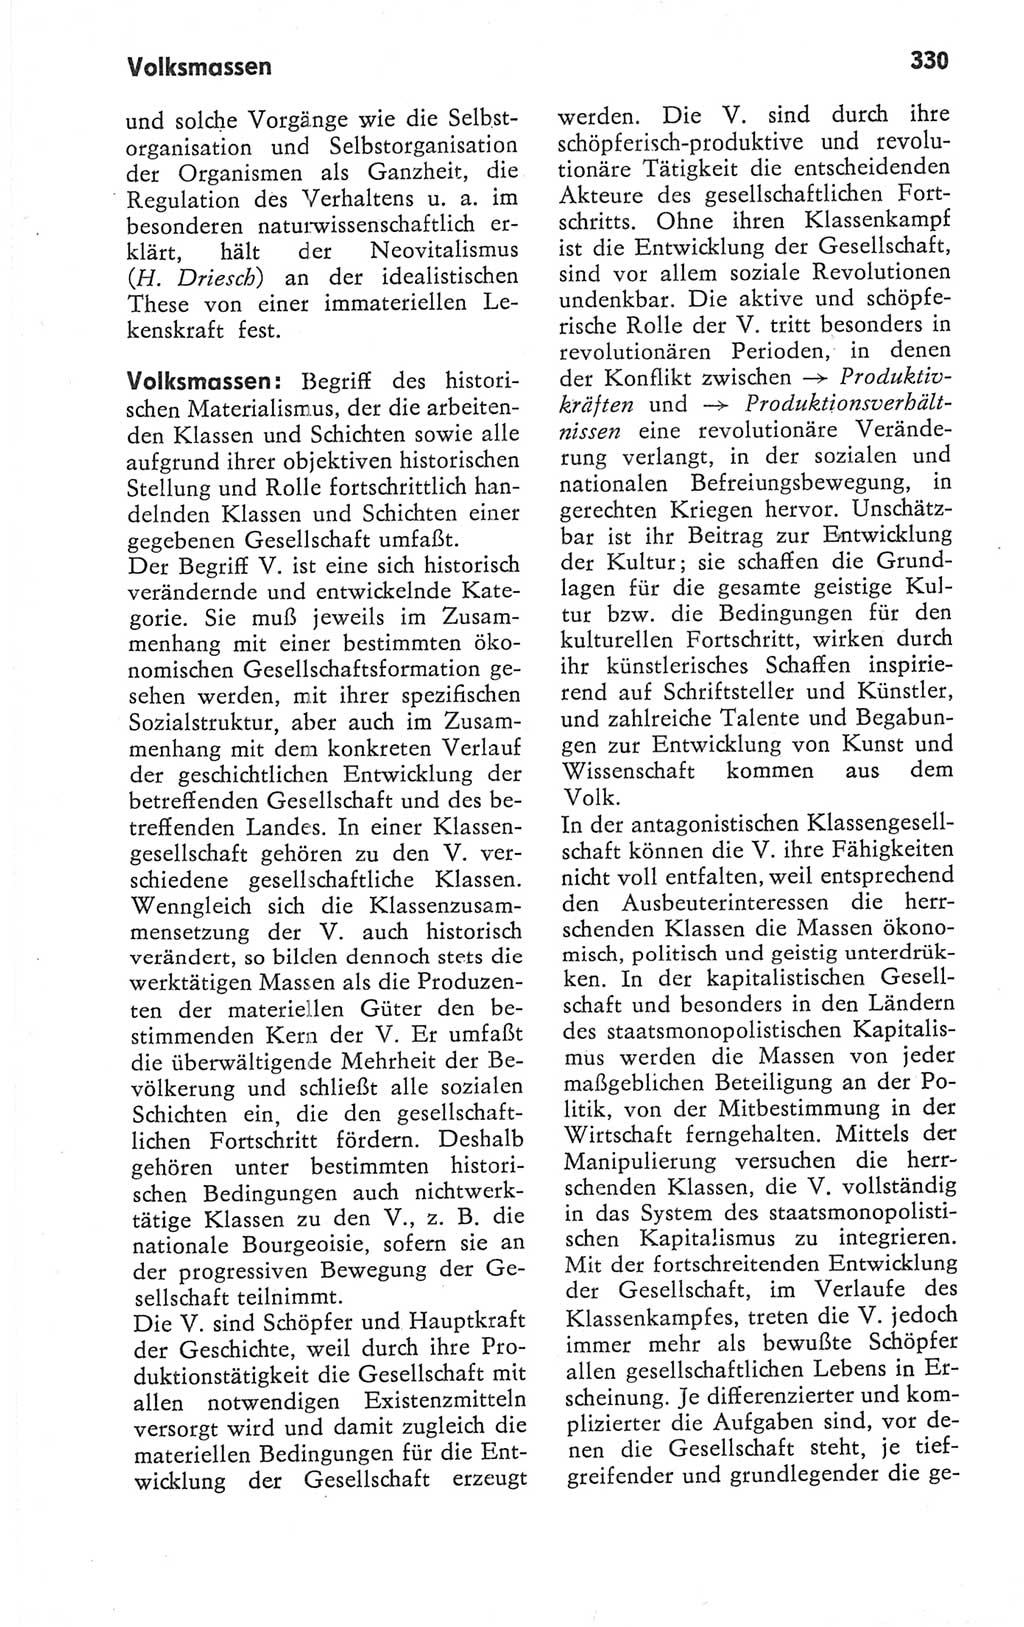 Kleines Wörterbuch der marxistisch-leninistischen Philosophie [Deutsche Demokratische Republik (DDR)] 1979, Seite 330 (Kl. Wb. ML Phil. DDR 1979, S. 330)